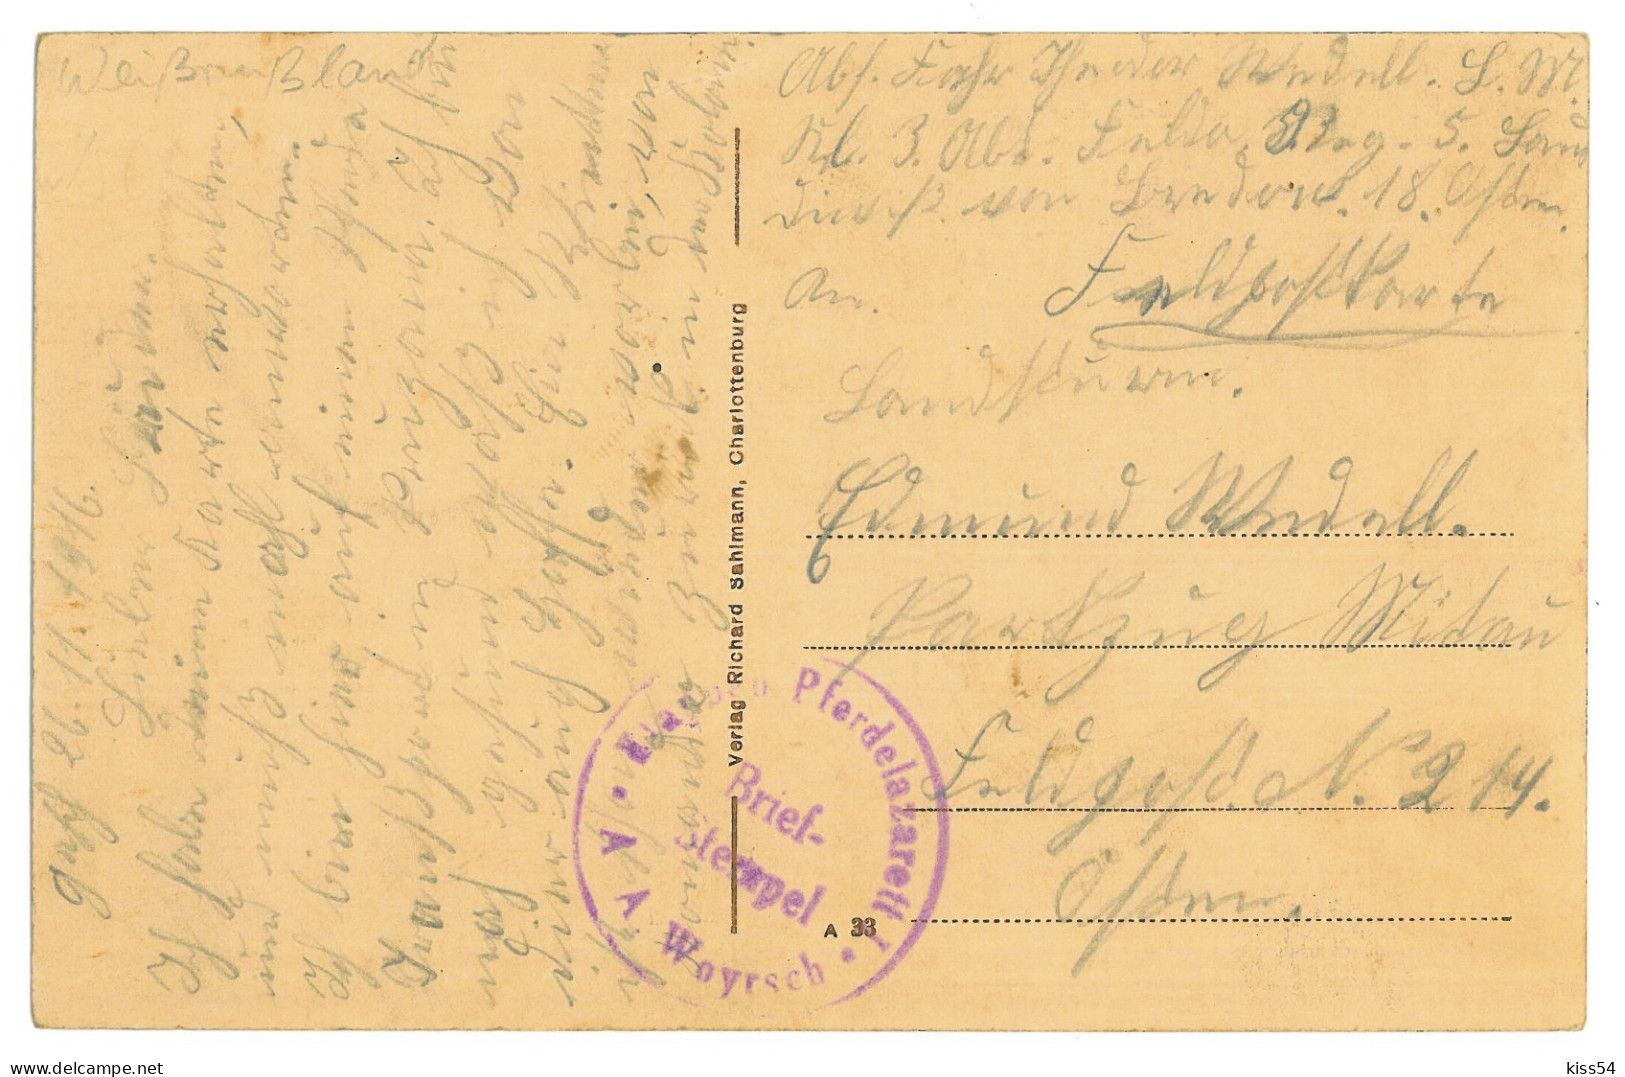 BL 31 - 24502 PRUZHANY, Brest Region, Street School, Belarus - Old Postcard, CENSOR - Used - 1916 - Belarus